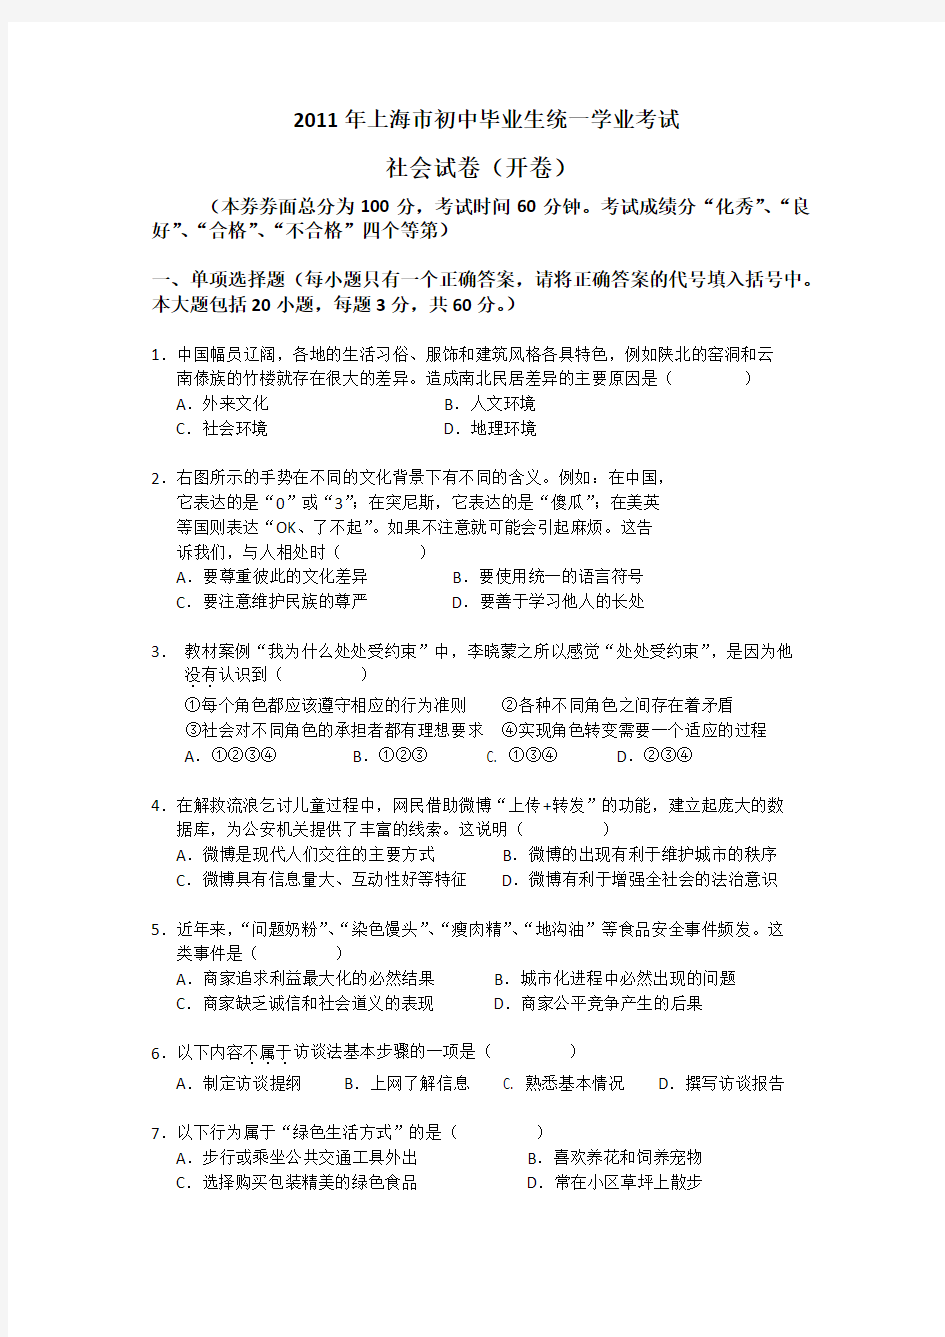 2011年上海市社会学科学业考试试卷